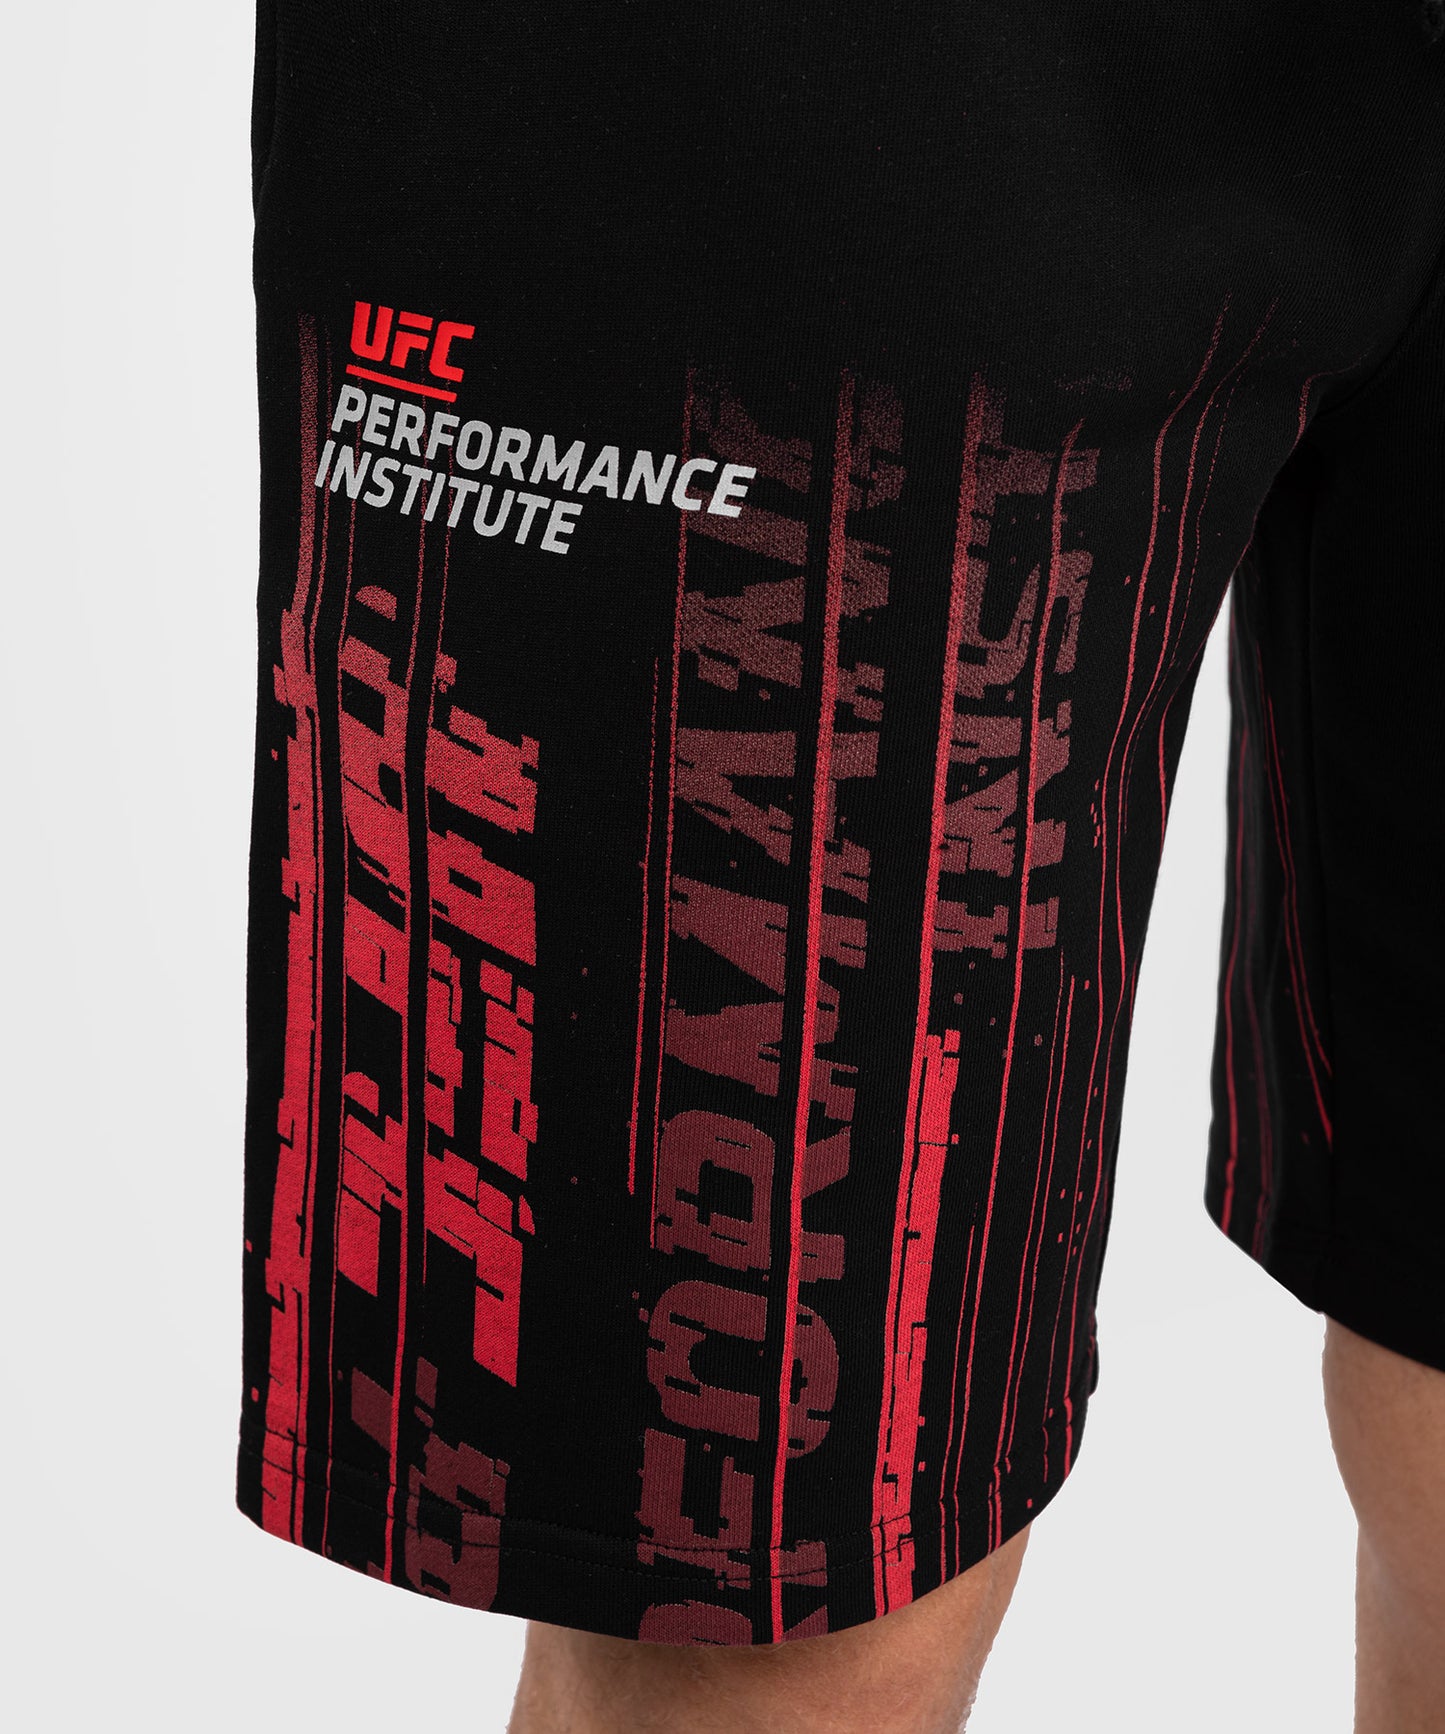 UFC Venum Performance Institute 2.0 Baumwoll-Short für Männer - Schwarz/Rot